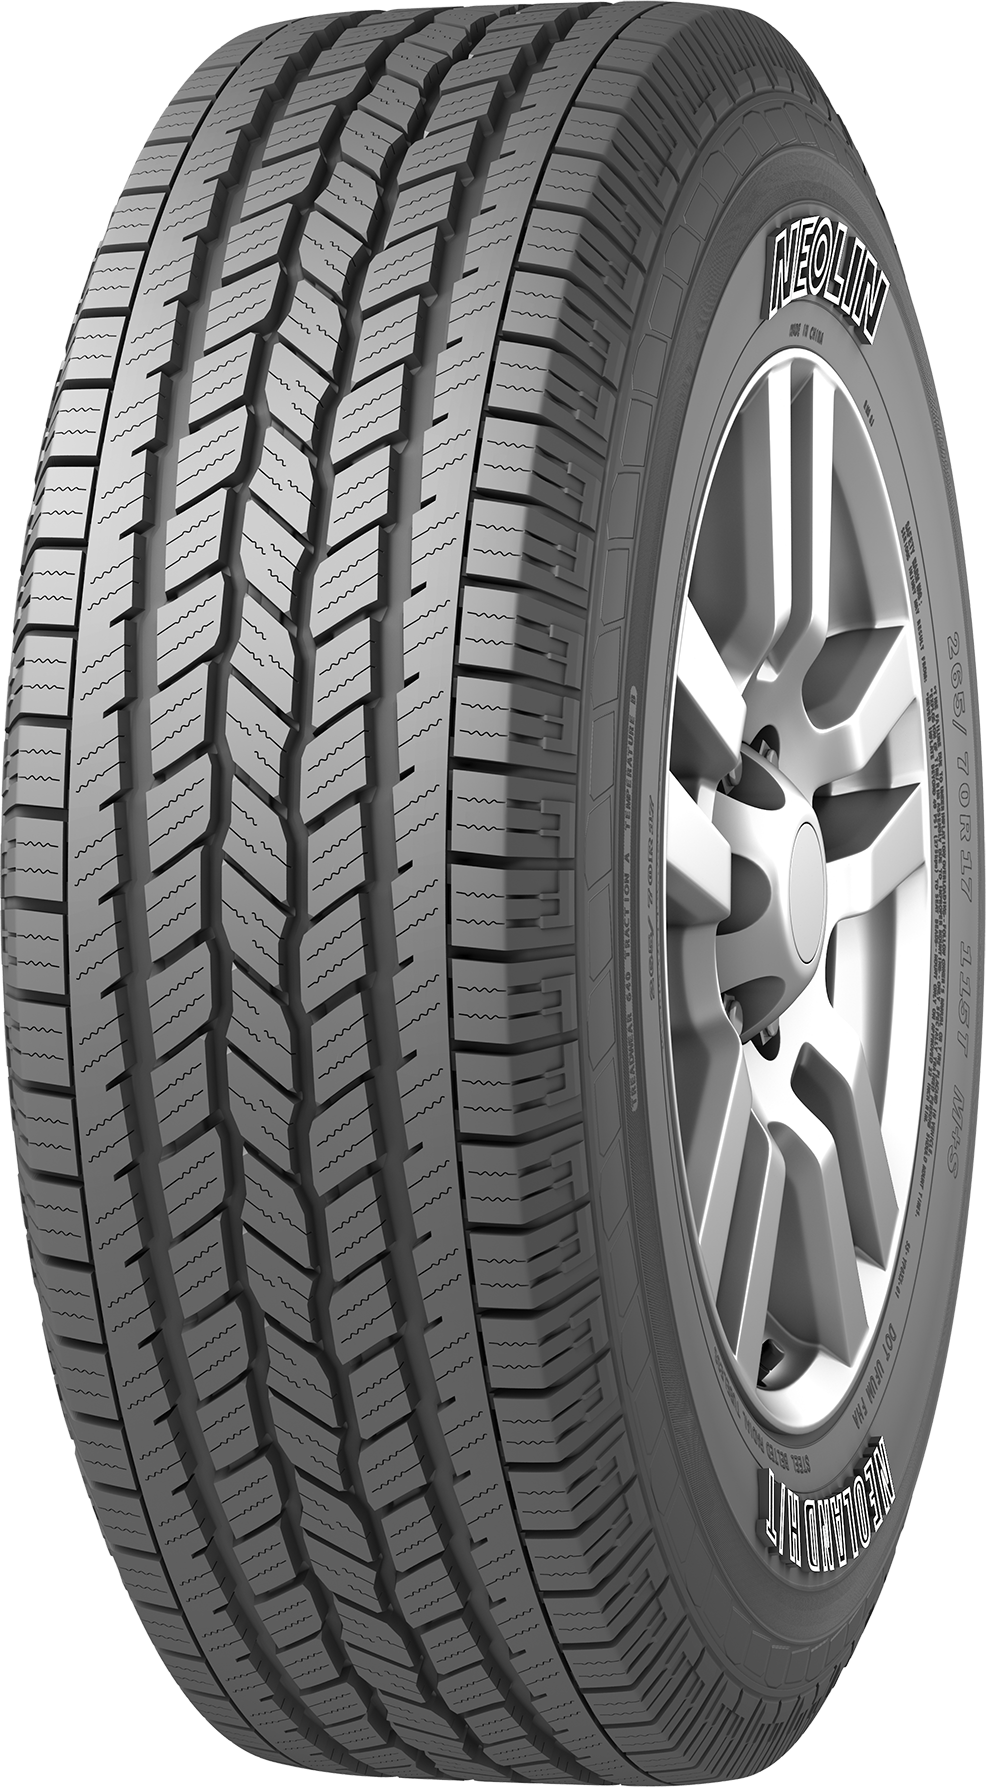 Neolin Tire LT 245/75 R16 Neoland HT 120/116R 